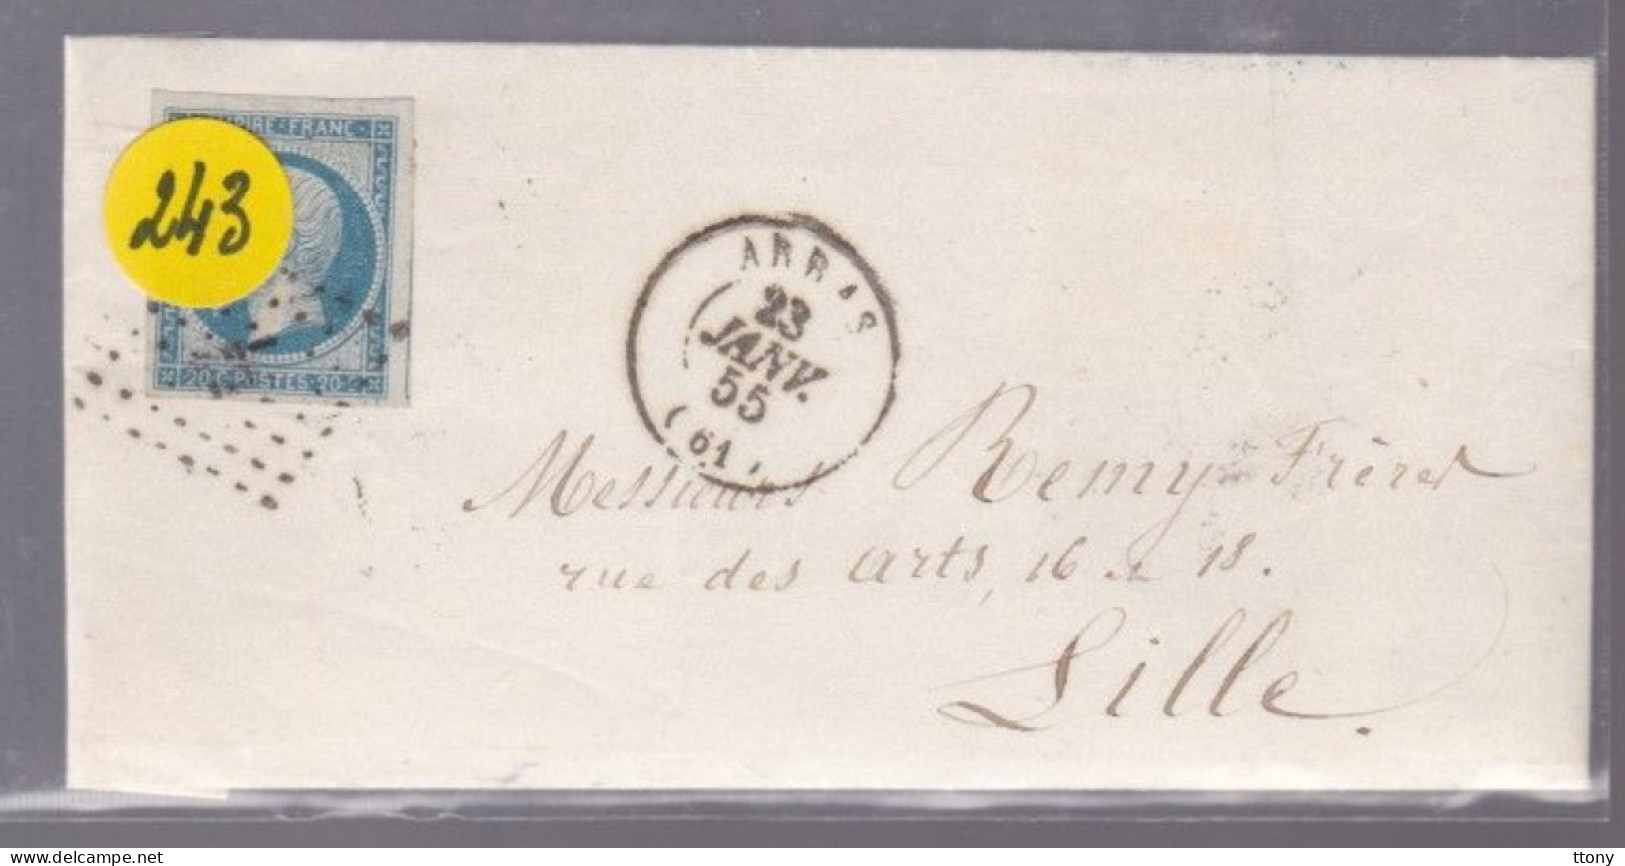 Un Timbre Napoléon III   N° 14  20 C Bleu   Arras 1855   Destination Lille - 1853-1860 Napoléon III